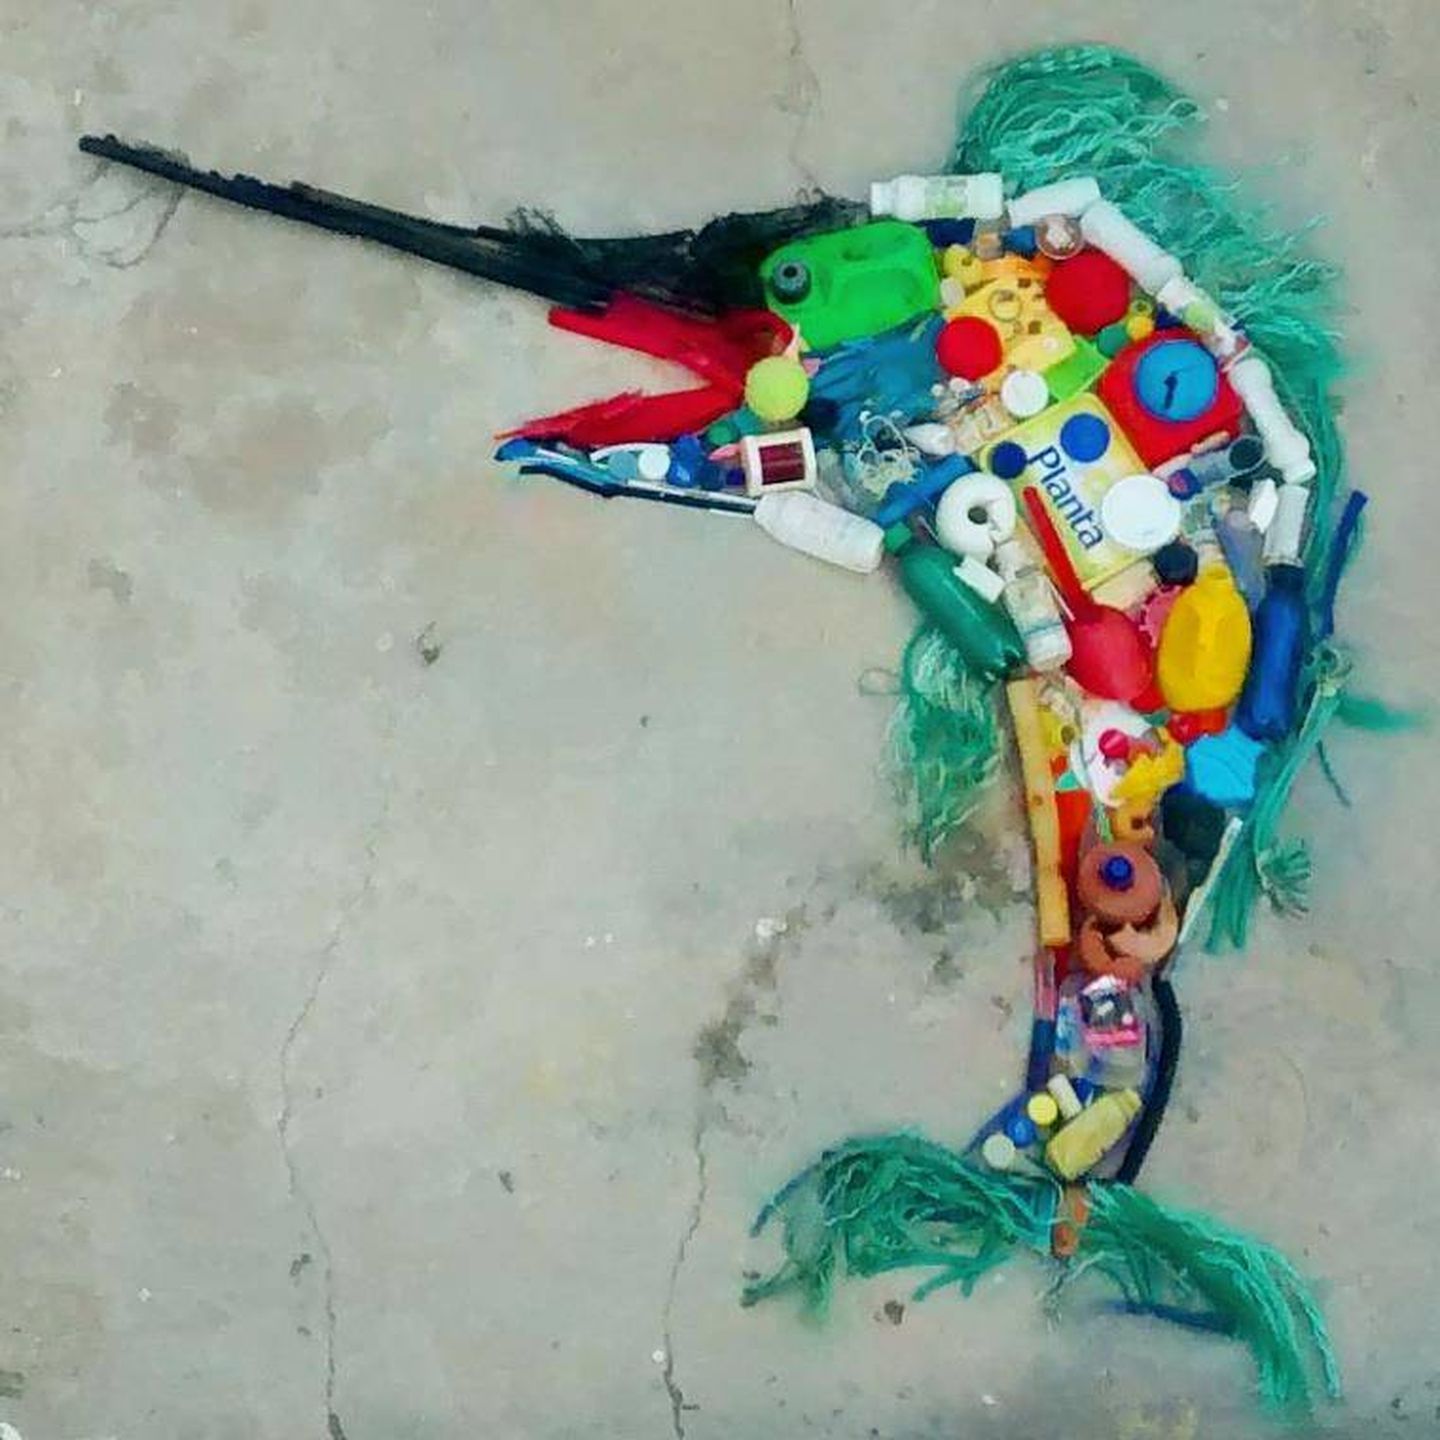 Pez espada hecho con trozos de plástico recogidos en una playa por Patri y Fer, los promotores de Vivir sin plástico (Vivir sin plástico | Facebook)